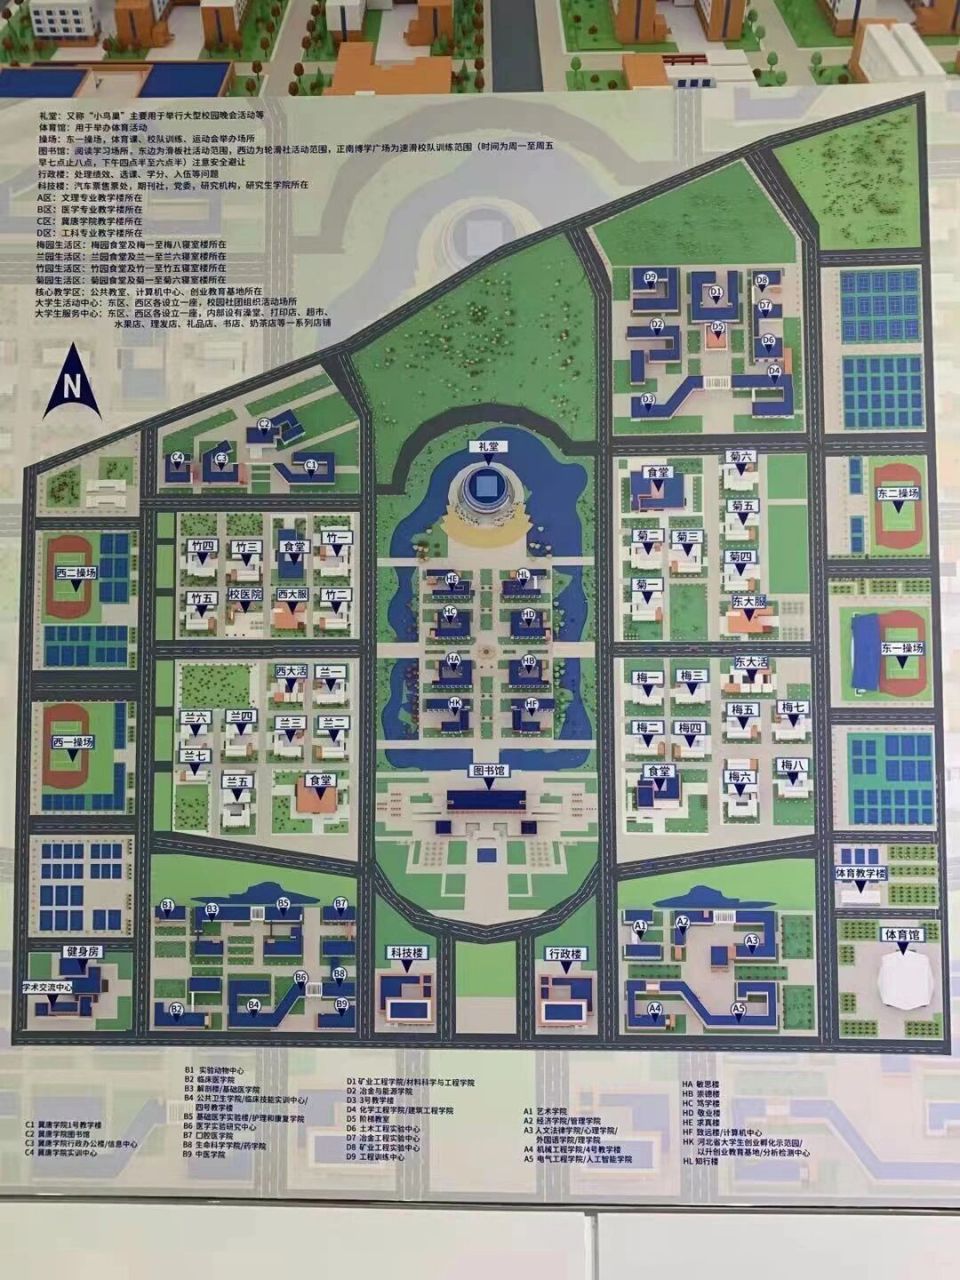 武汉华夏理工学院地图图片